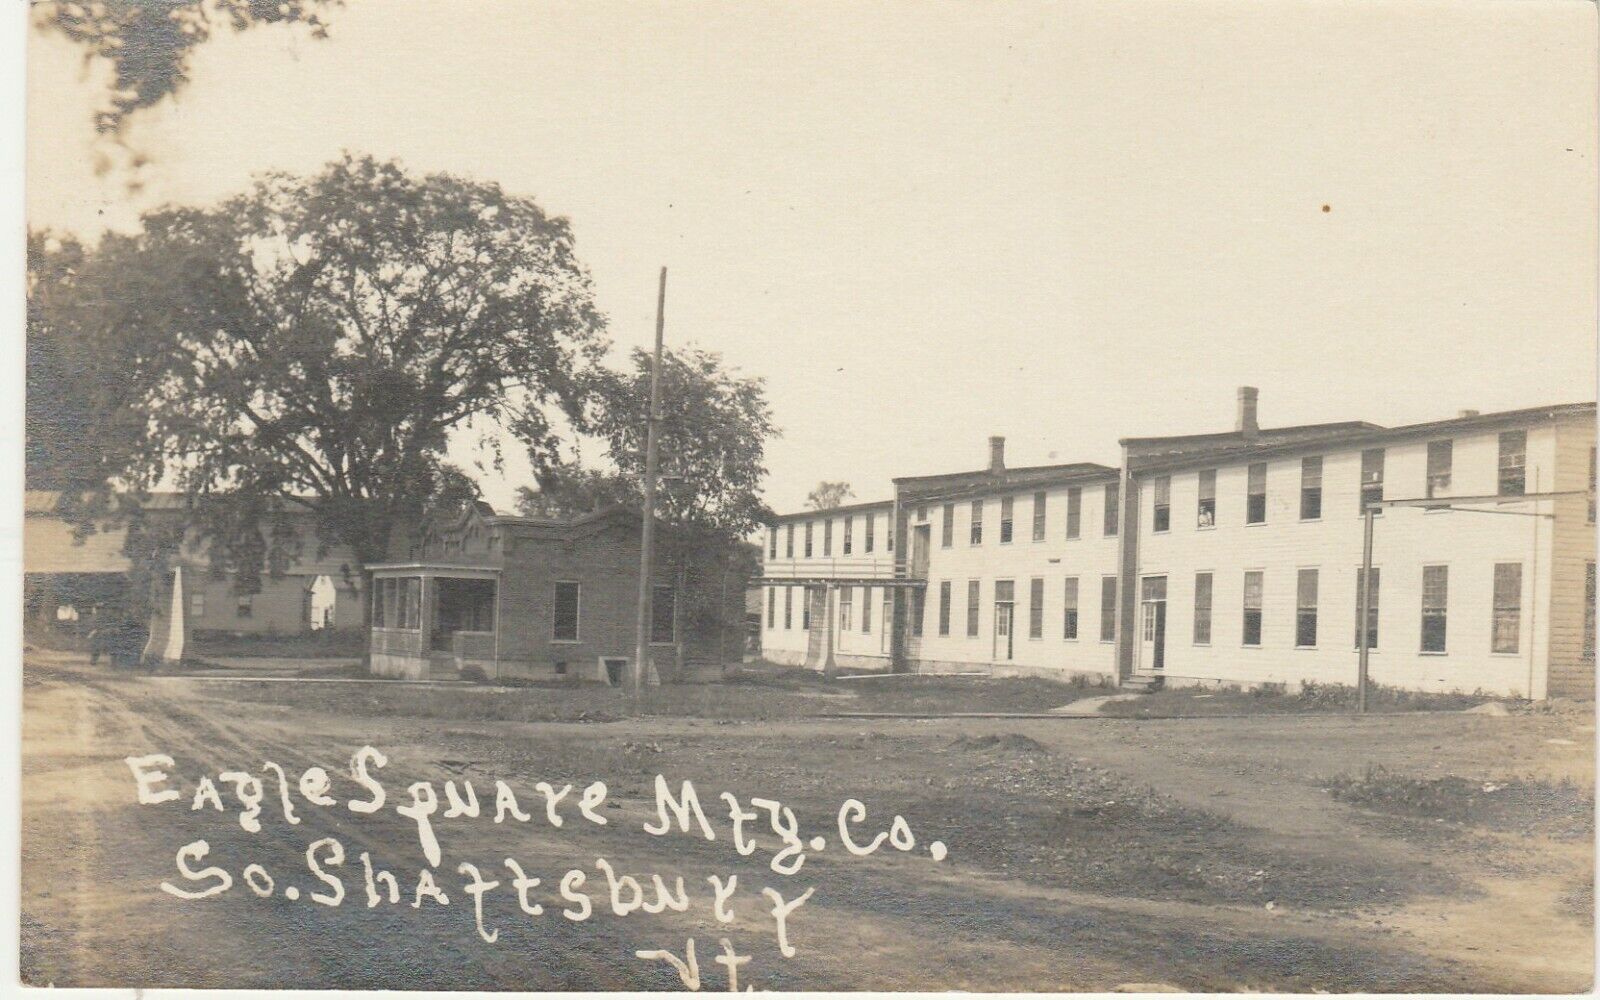 South Shaftsbury VT -- RPPC -- Eagle Square Mfg. Co. -- Circa 1918 -- Postcard